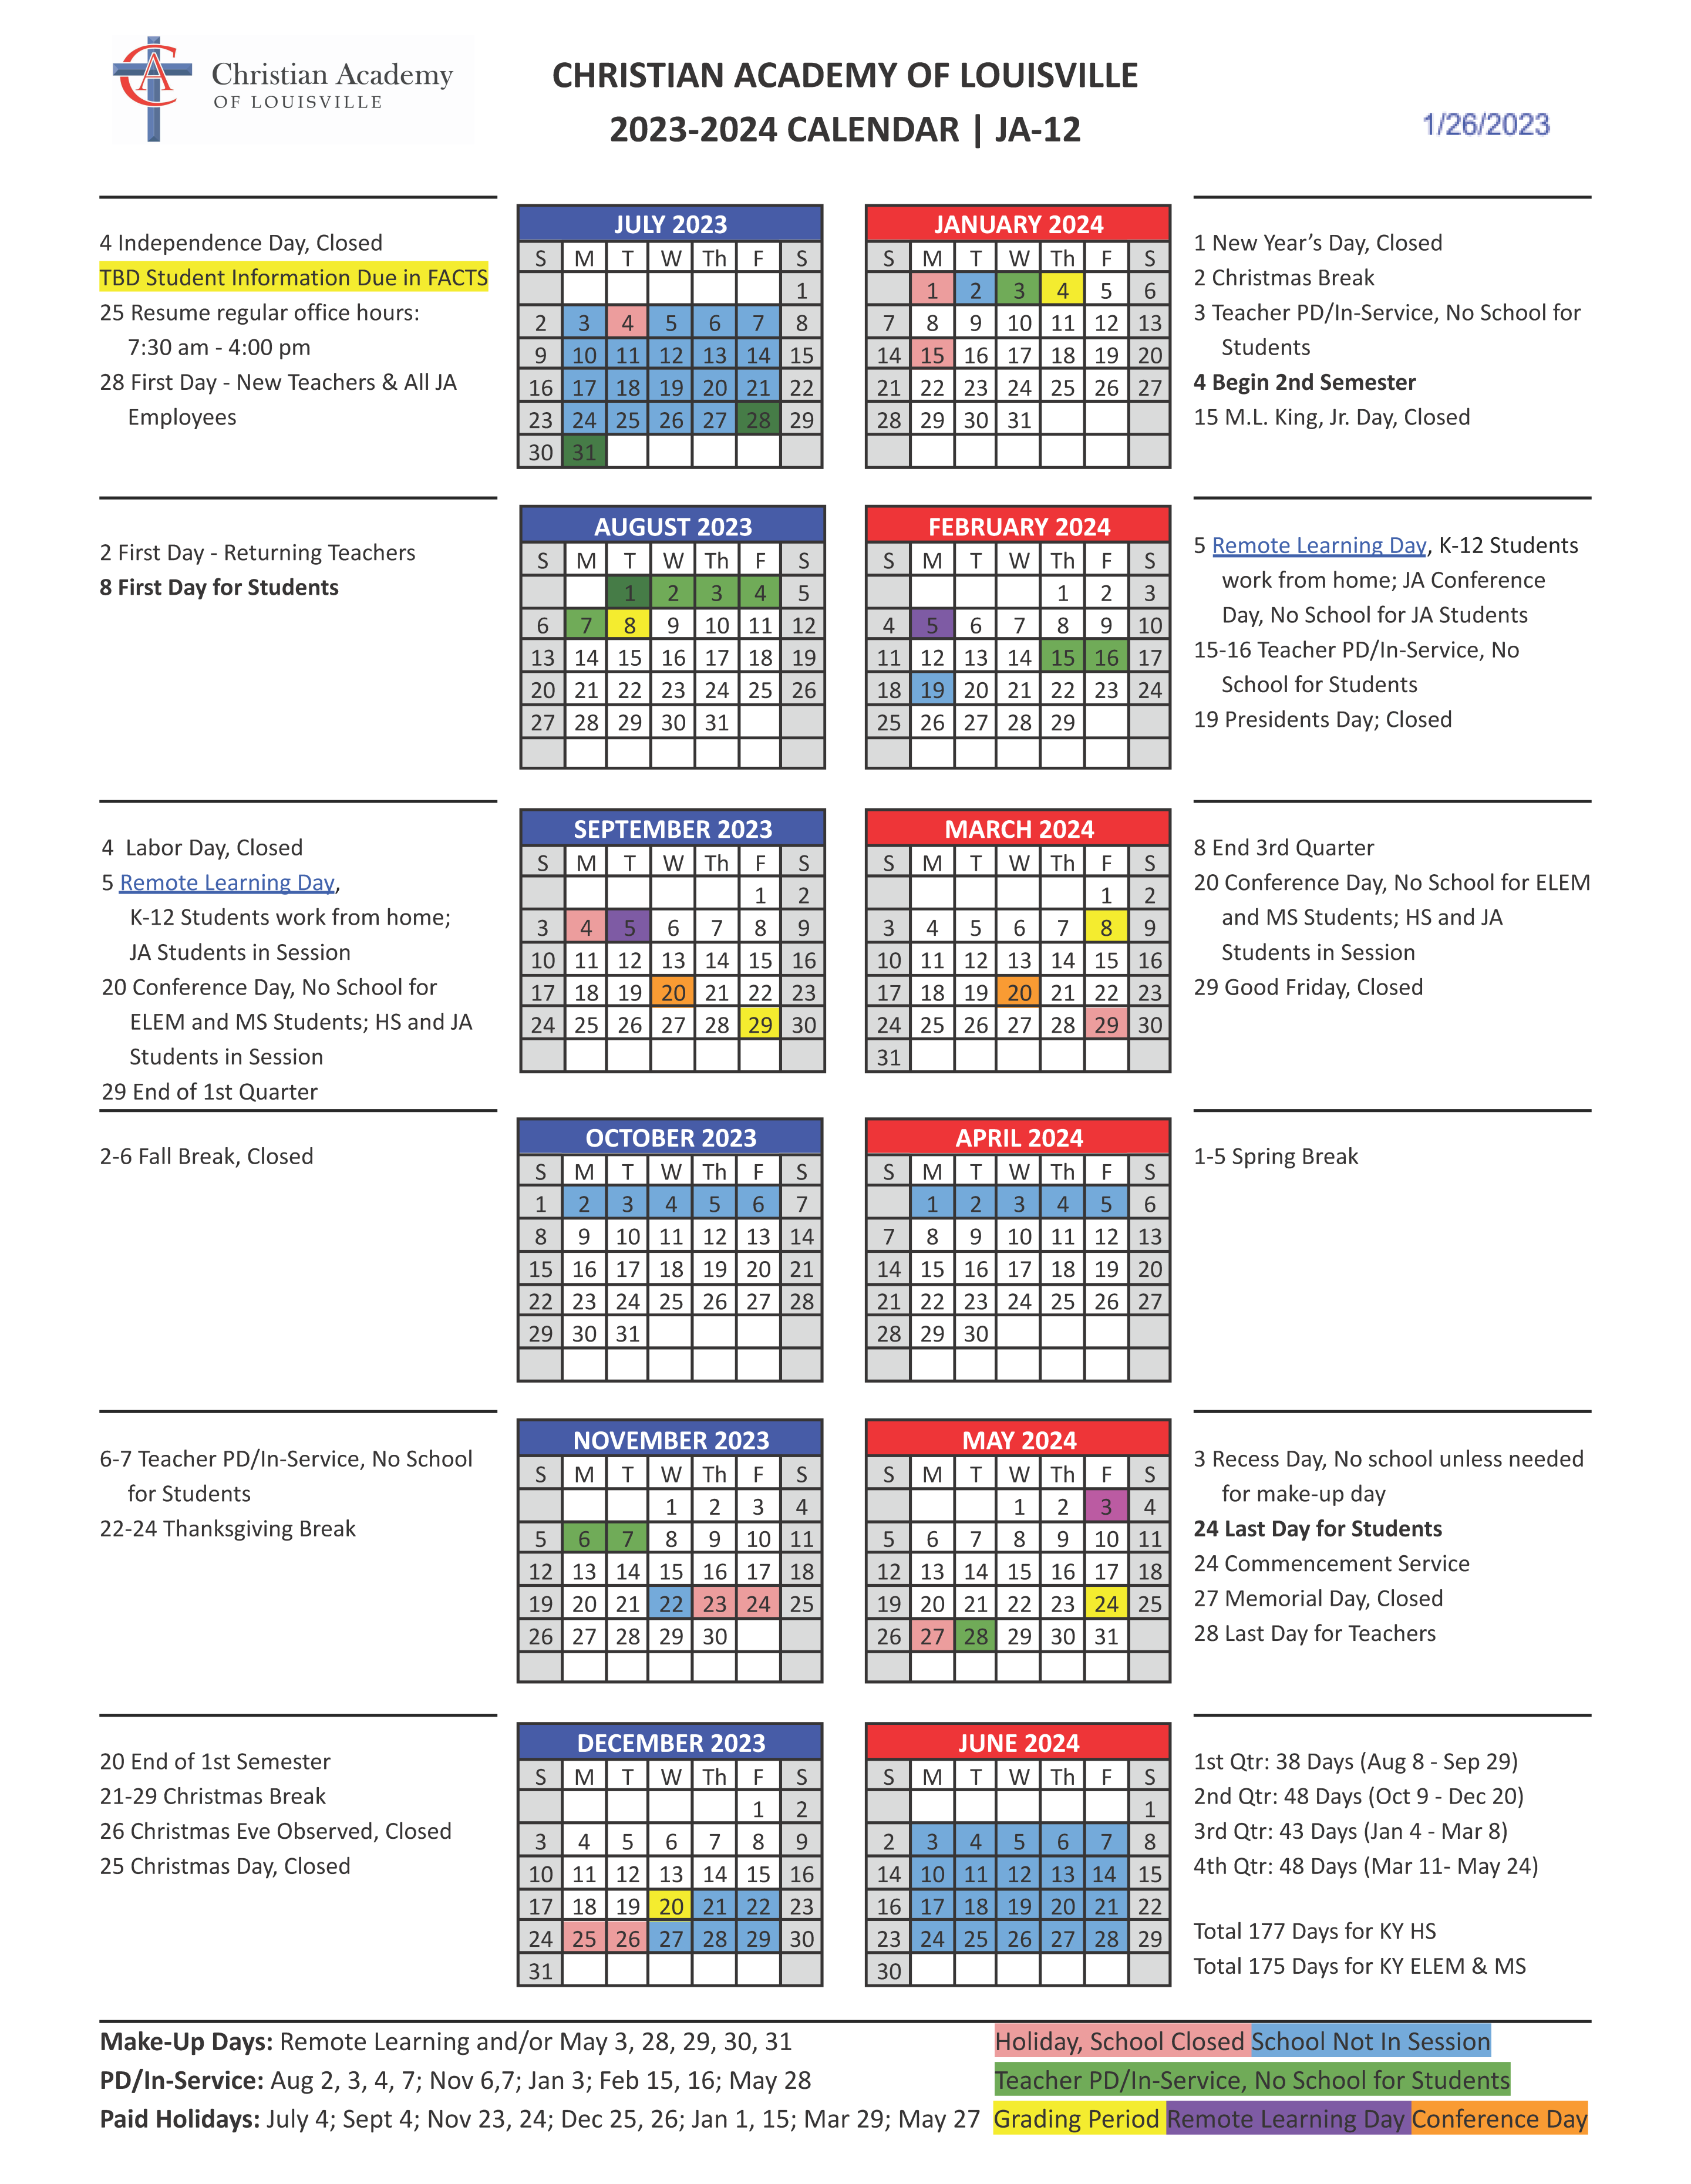 Christian Academy School System | Christian Academy of Louisville | 2023-2024 Family Calendar